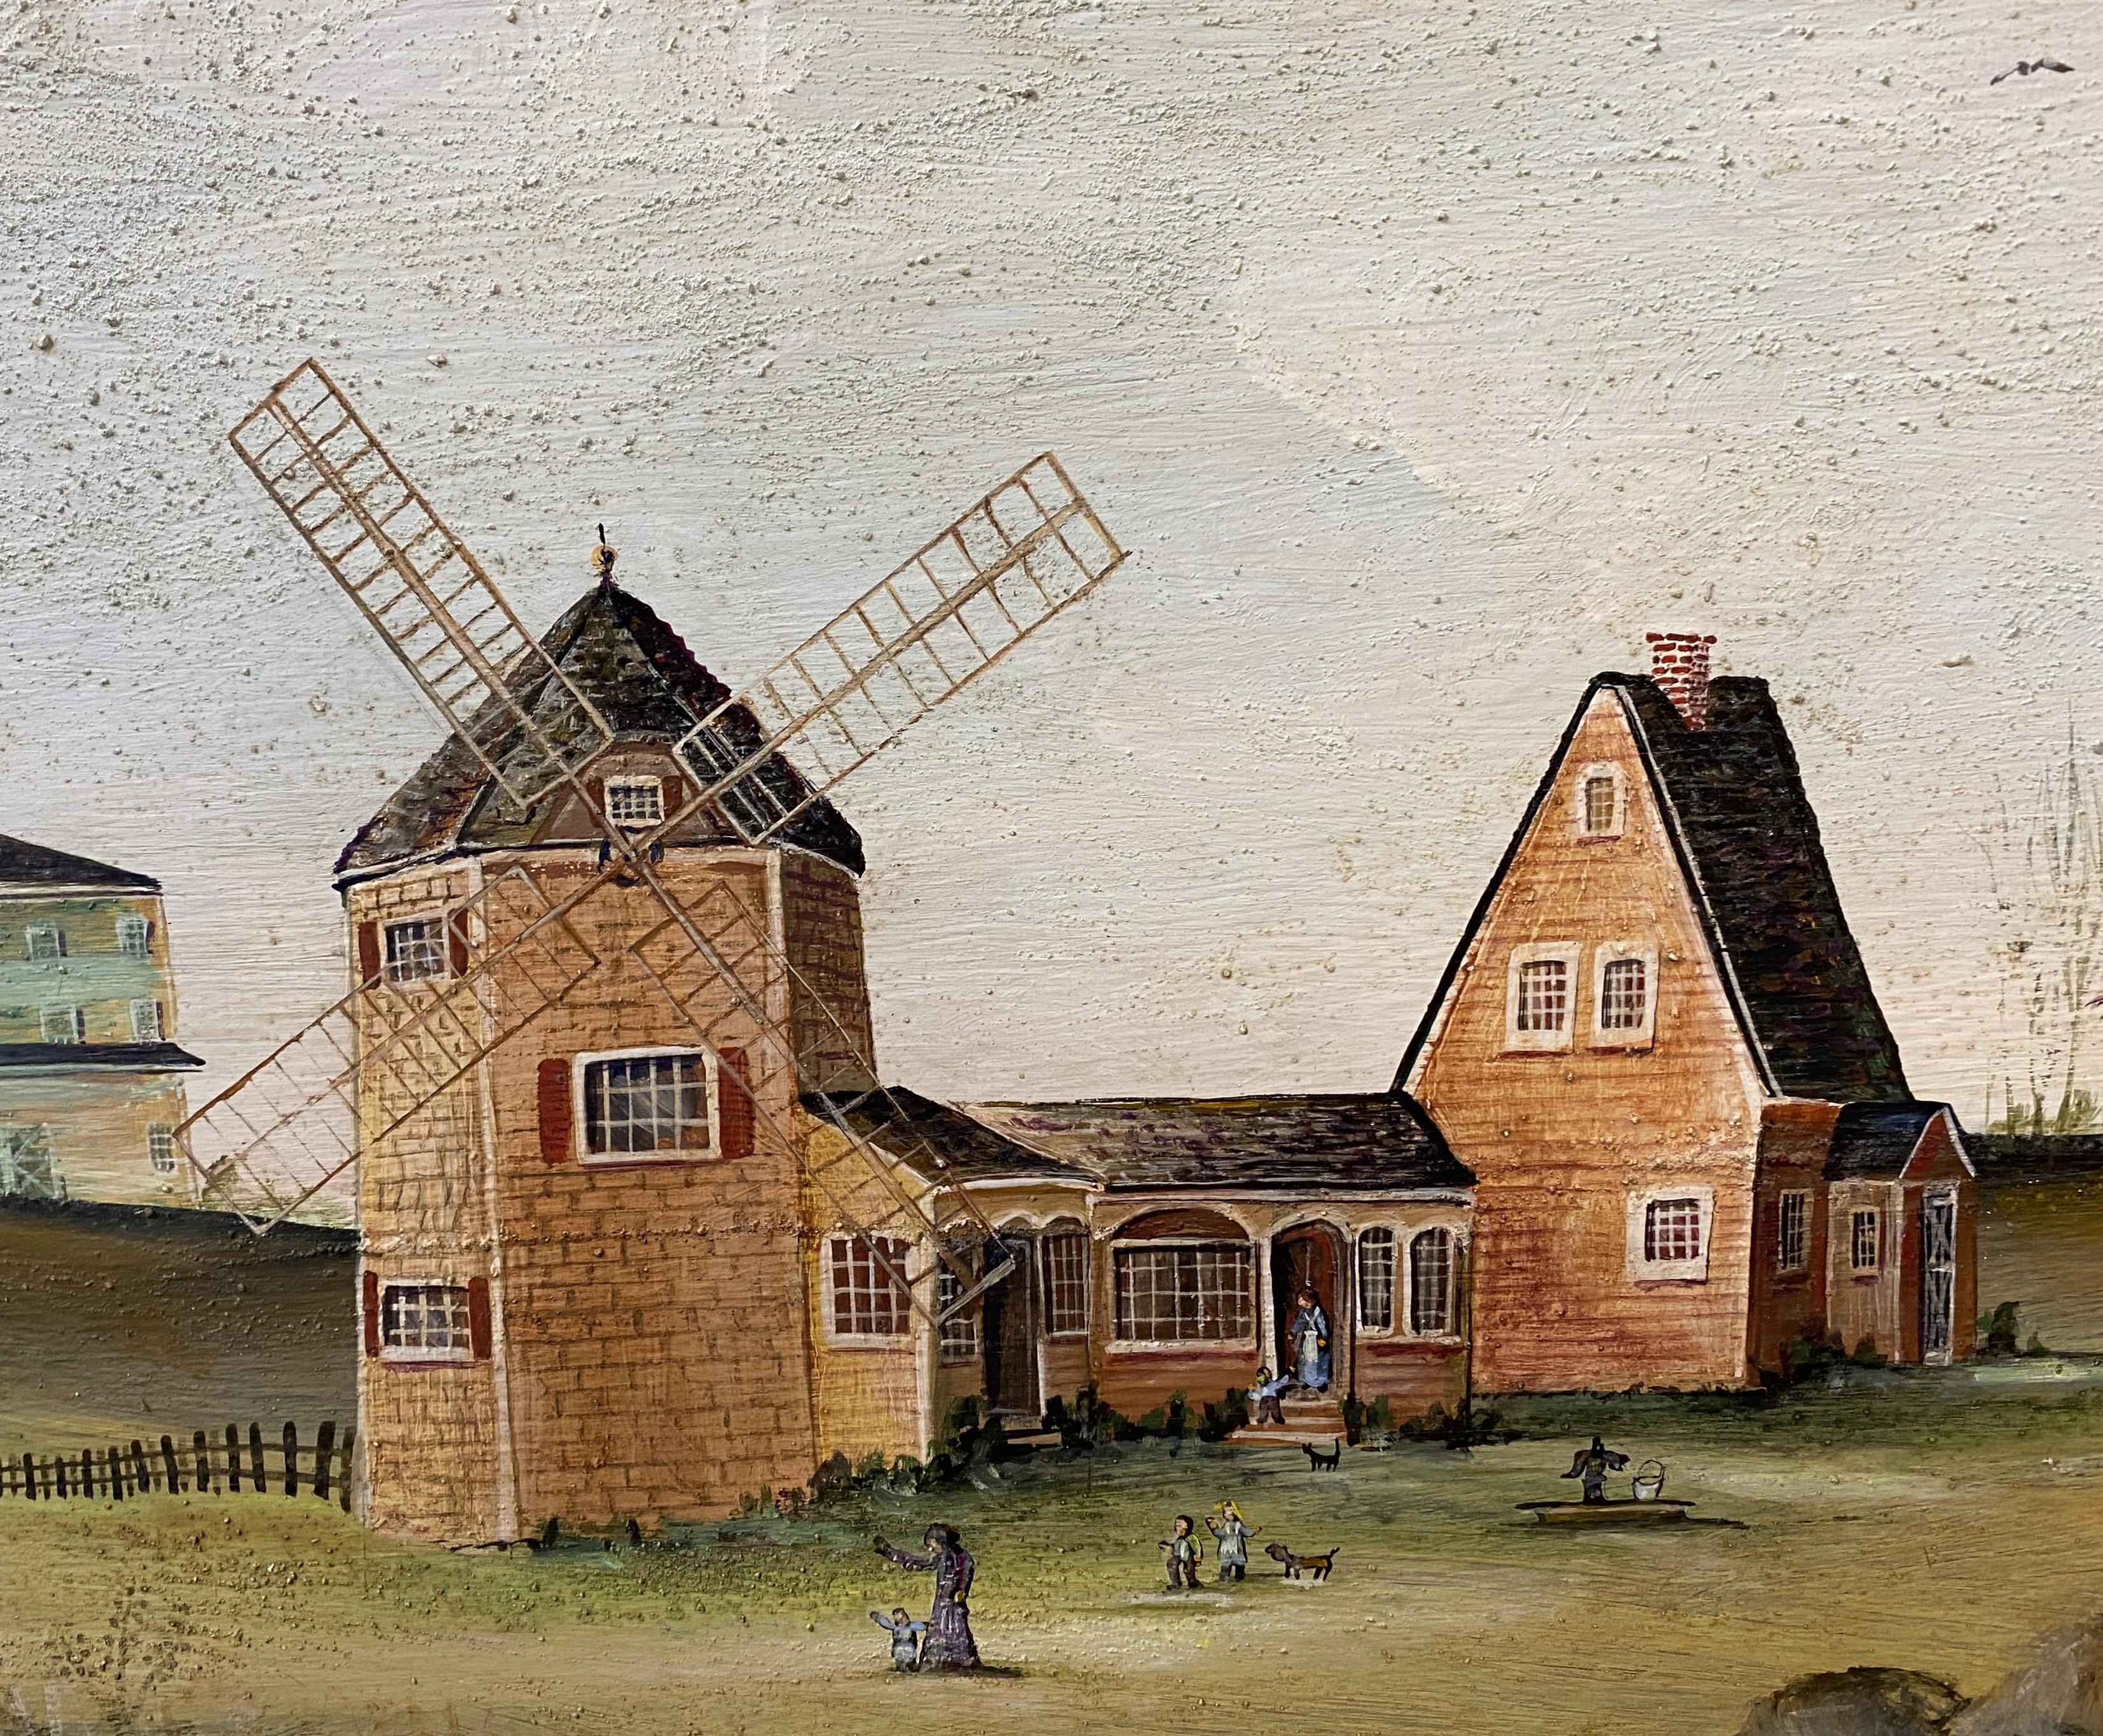 Ein schönes naives Landschaftsgemälde mit einer Windmühle der amerikanischen Künstlerin Janet Munro (geb. 1949). Munro wurde in Woburn, MA, geboren und konzentriert sich in ihrer Arbeit auf das Leben der Menschen am Wasser - ihre bevorzugten Motive